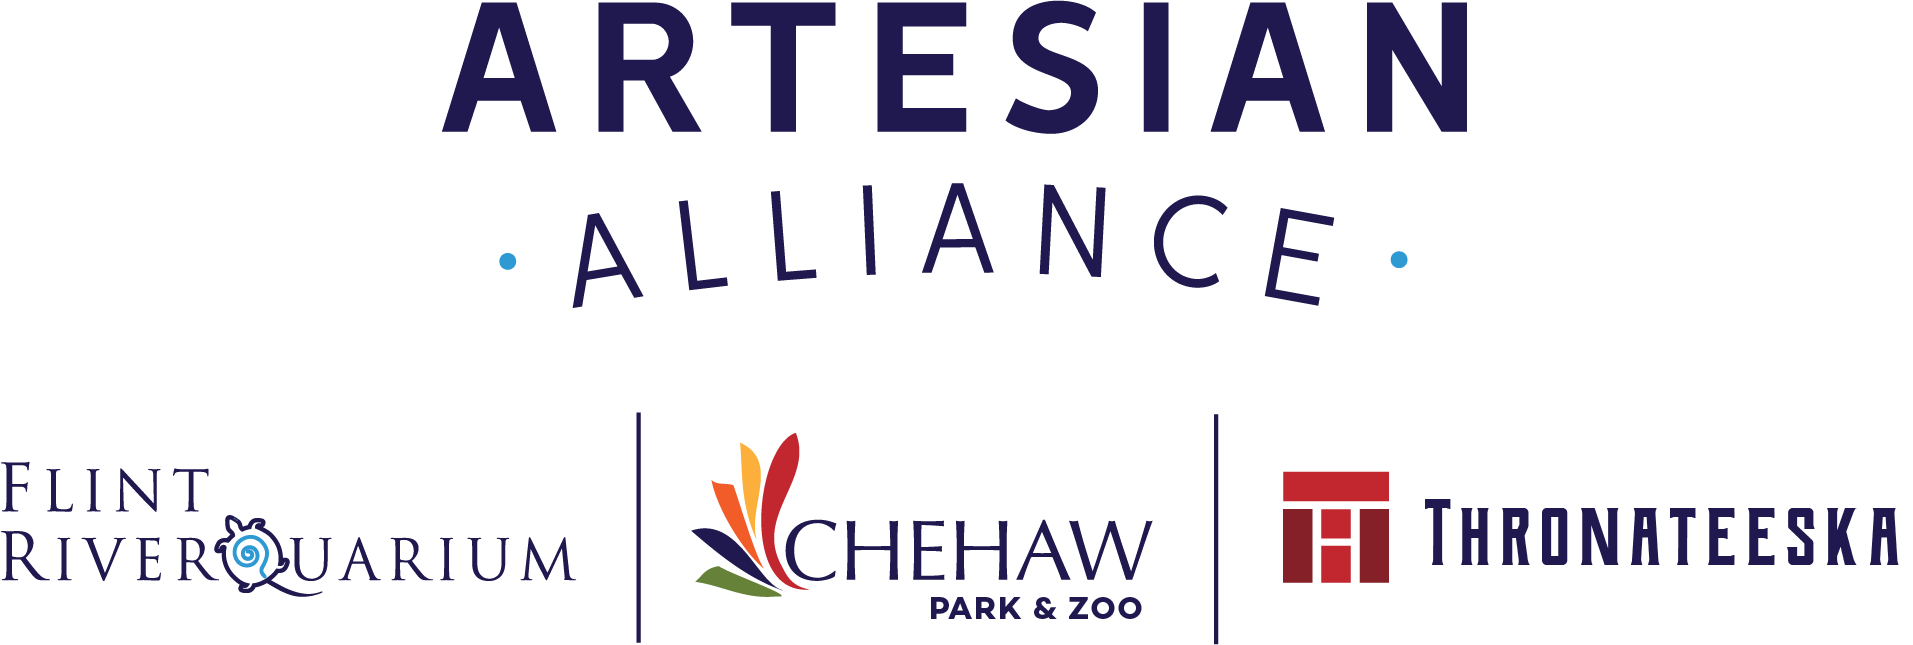 artesian-alliance-logo-3-full-logos